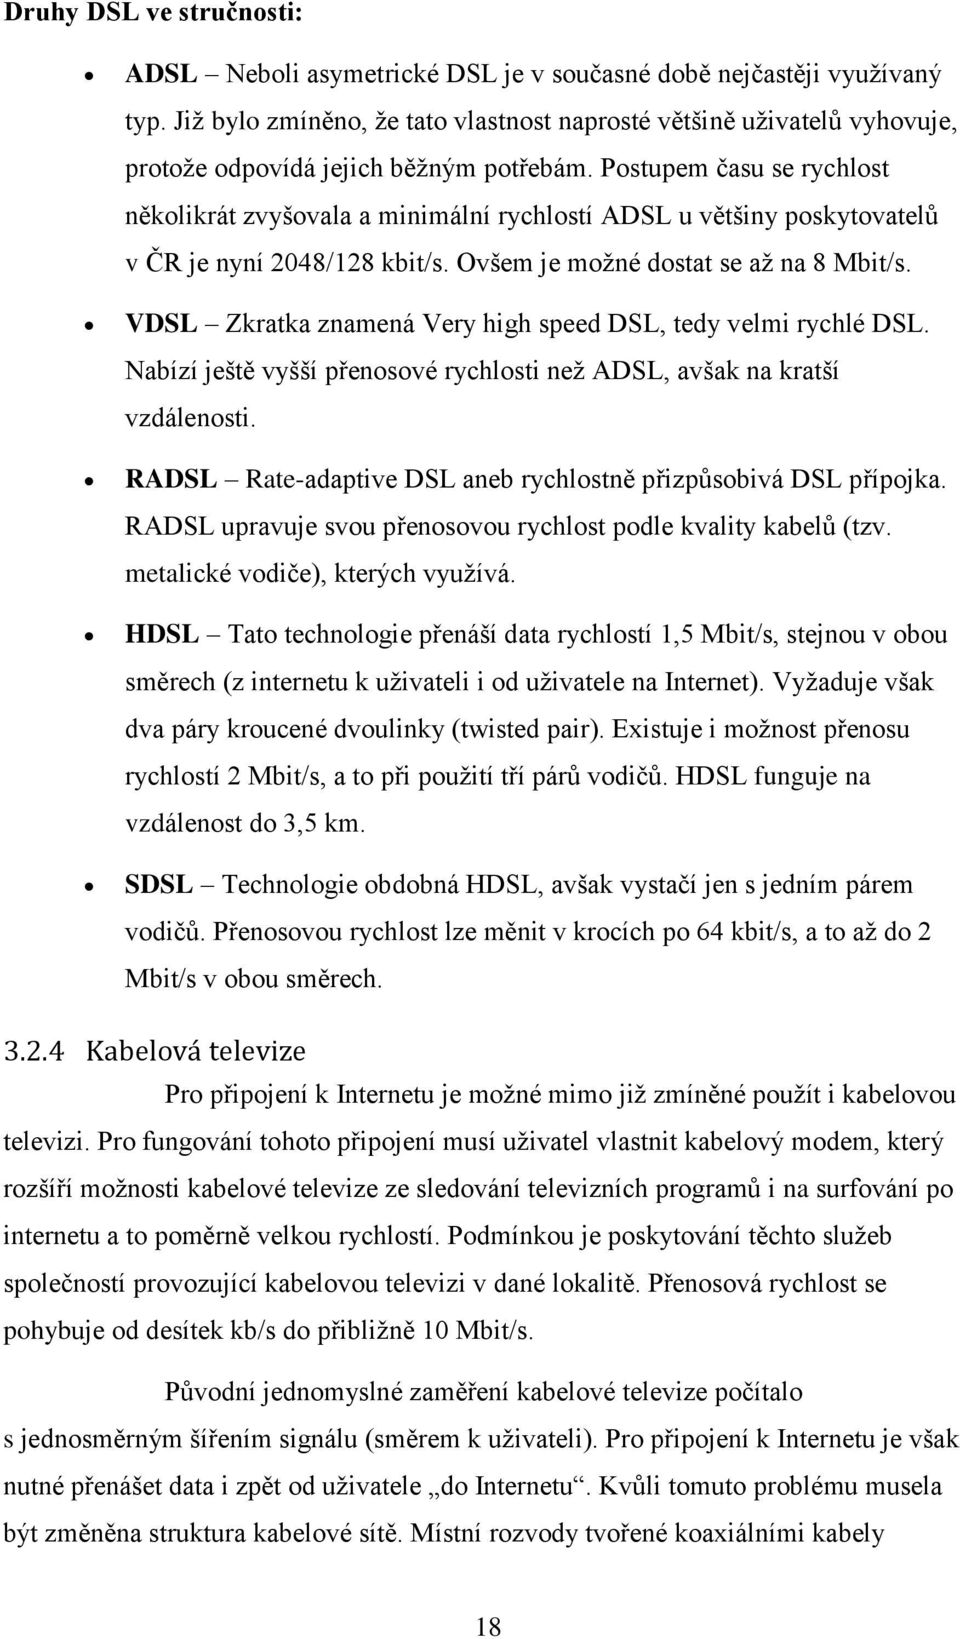 Postupem času se rychlost několikrát zvyšovala a minimální rychlostí ADSL u většiny poskytovatelů v ČR je nyní 2048/128 kbit/s. Ovšem je možné dostat se až na 8 Mbit/s.